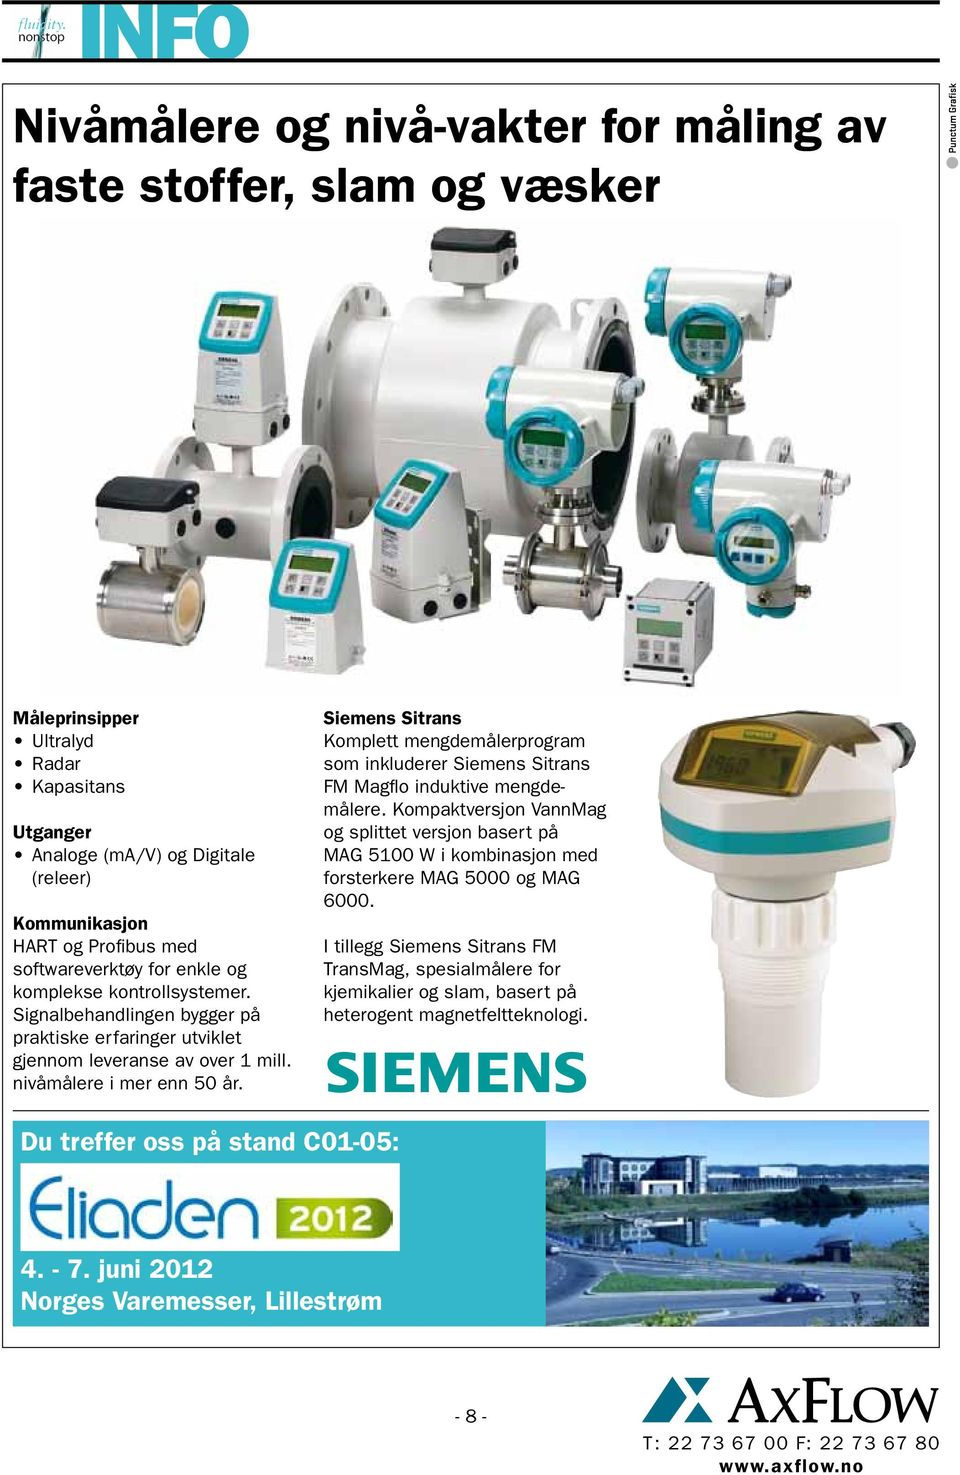 Siemens Sitrans Komplett mengdemålerprogram som inkluderer Siemens Sitrans FM Magflo induktive mengdemålere.